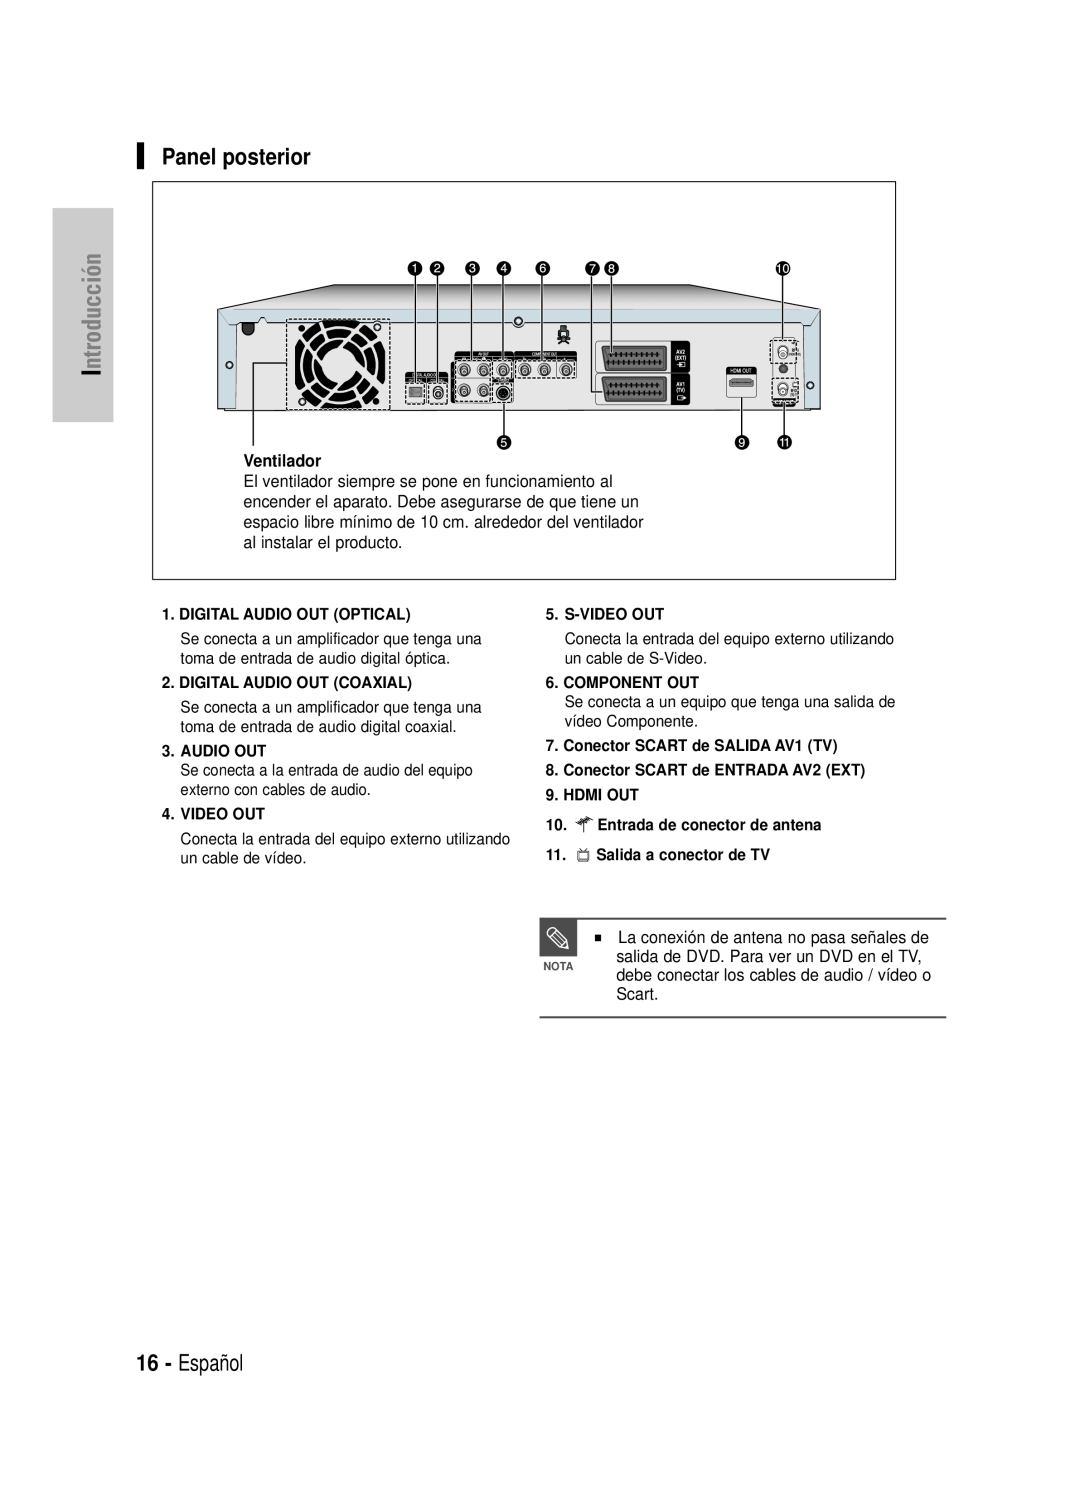 Samsung DVD-HR725/XEB Panel posterior, Español, Introducción, Scart, Digital Audio Out Optical, Digital Audio Out Coaxial 